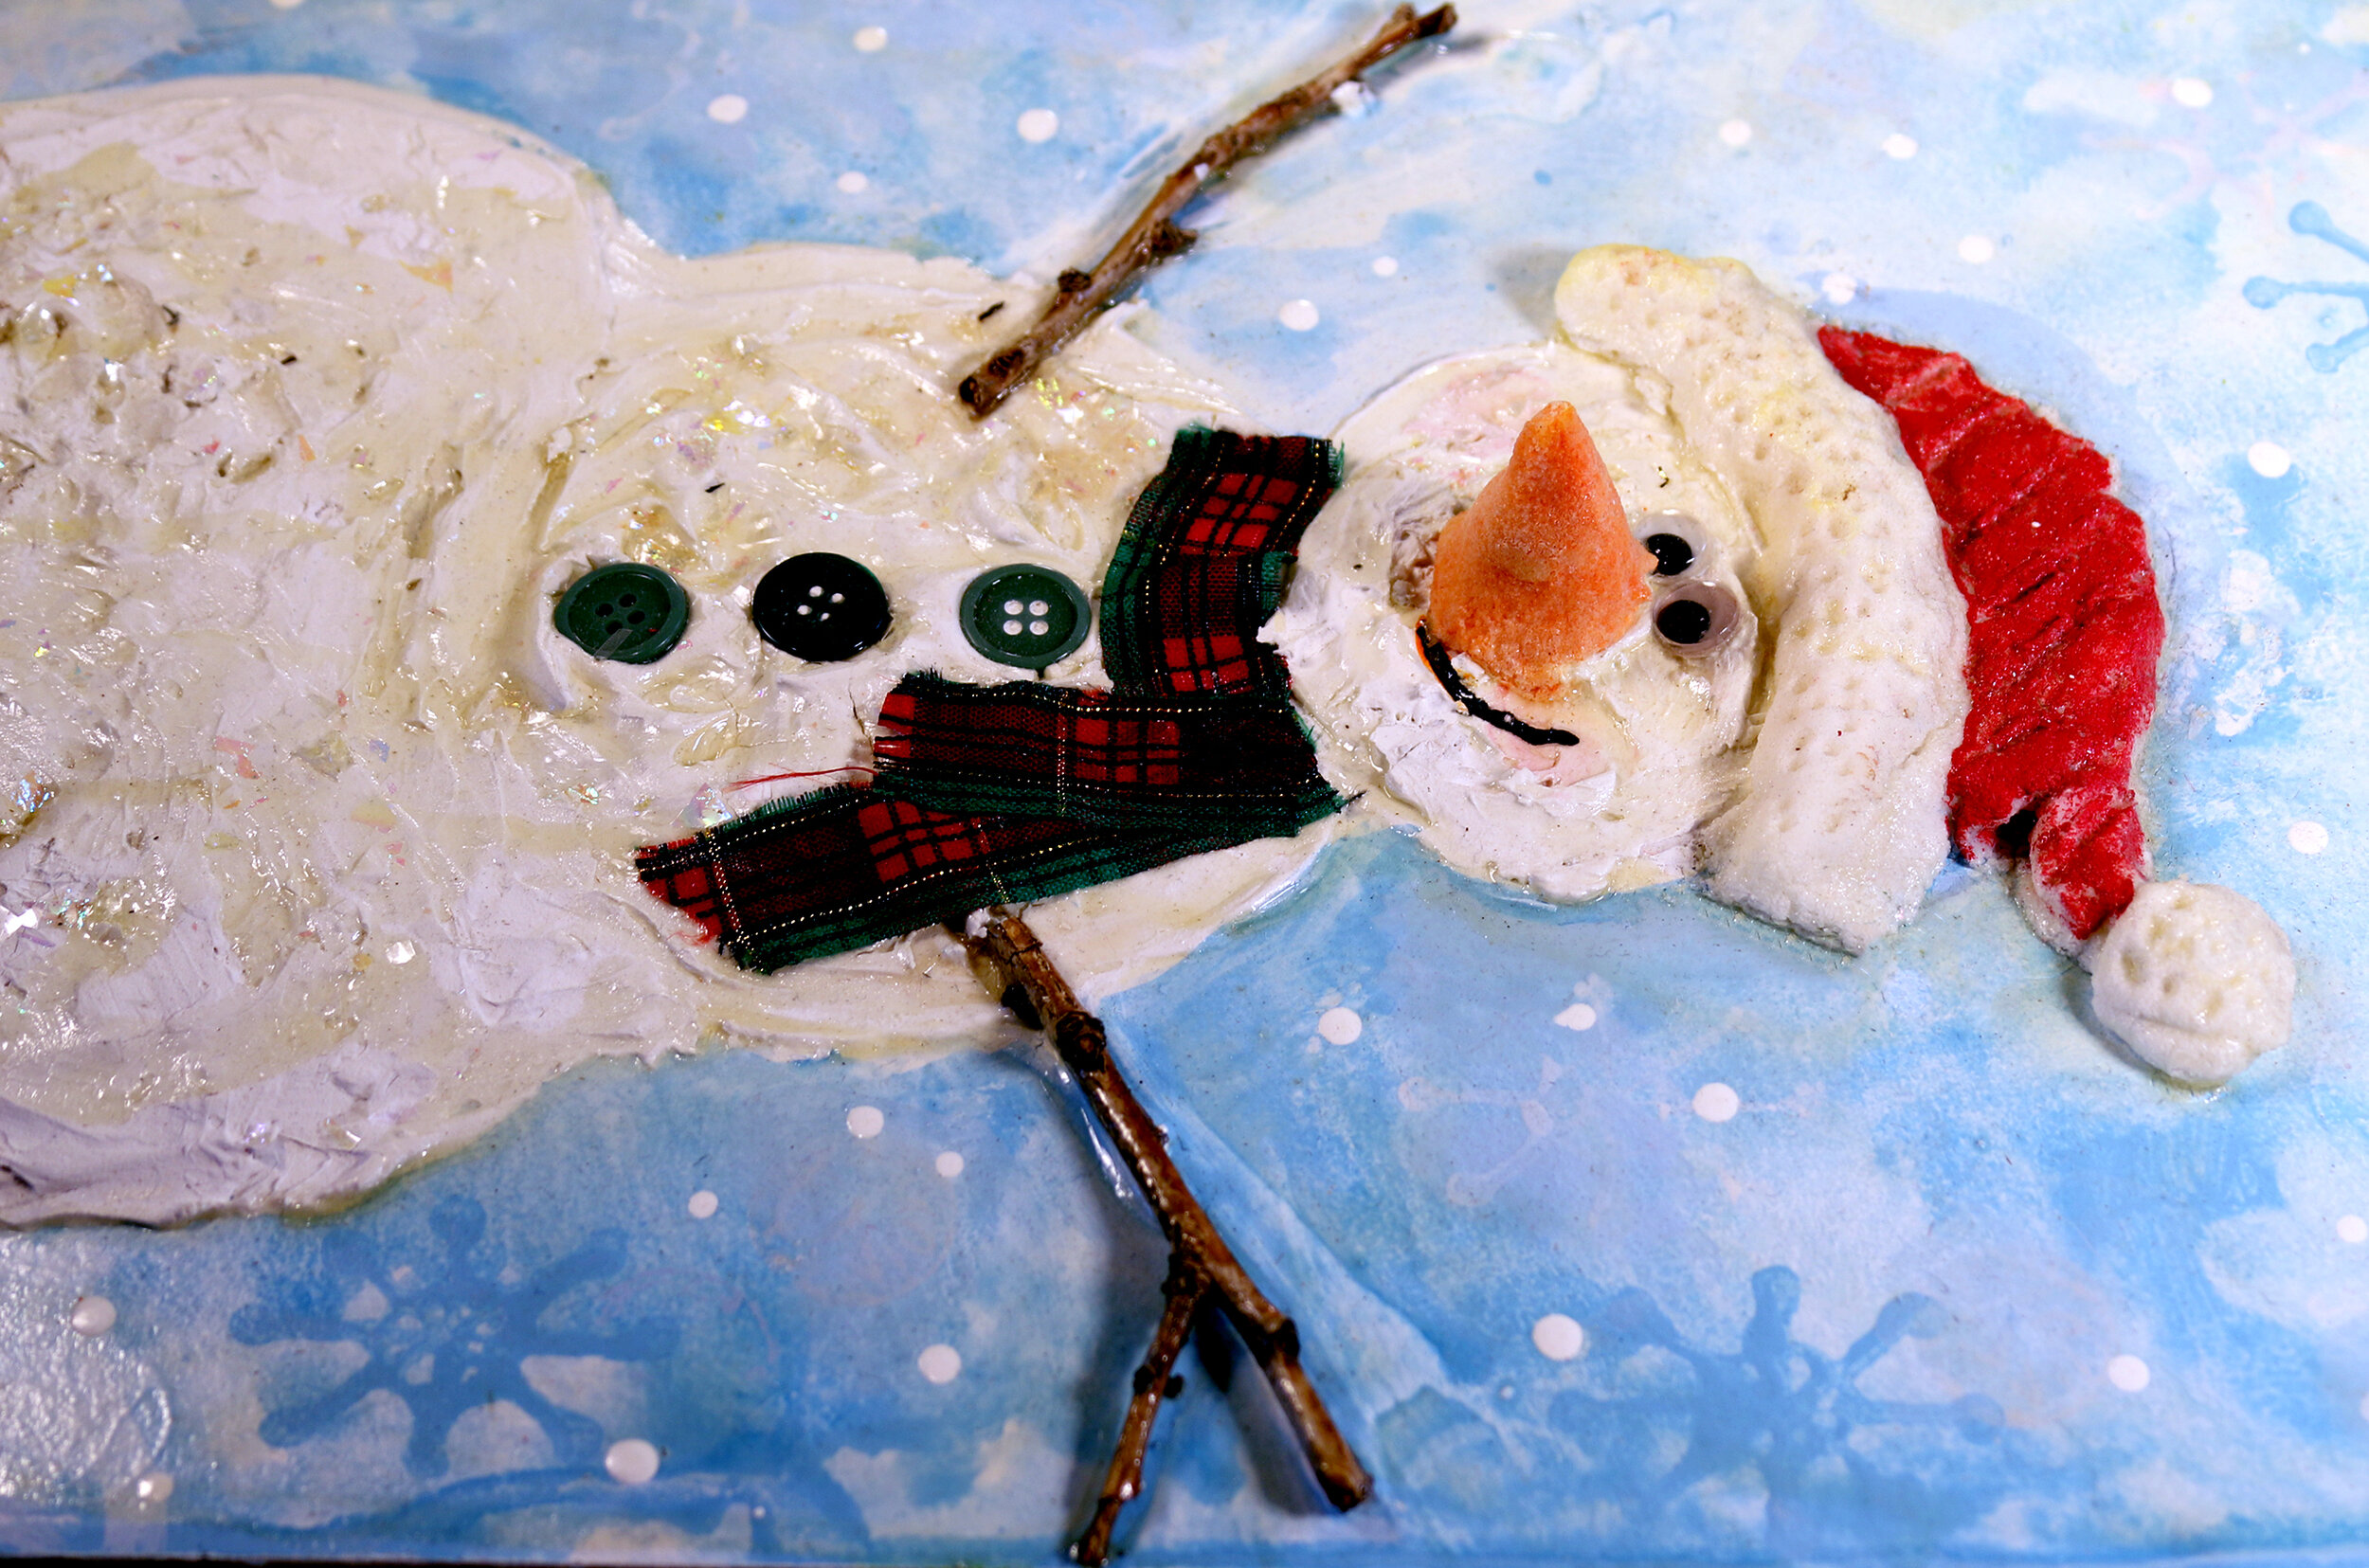 High texture snowman kit — Ellen's Art / Blessed and Broken Creations